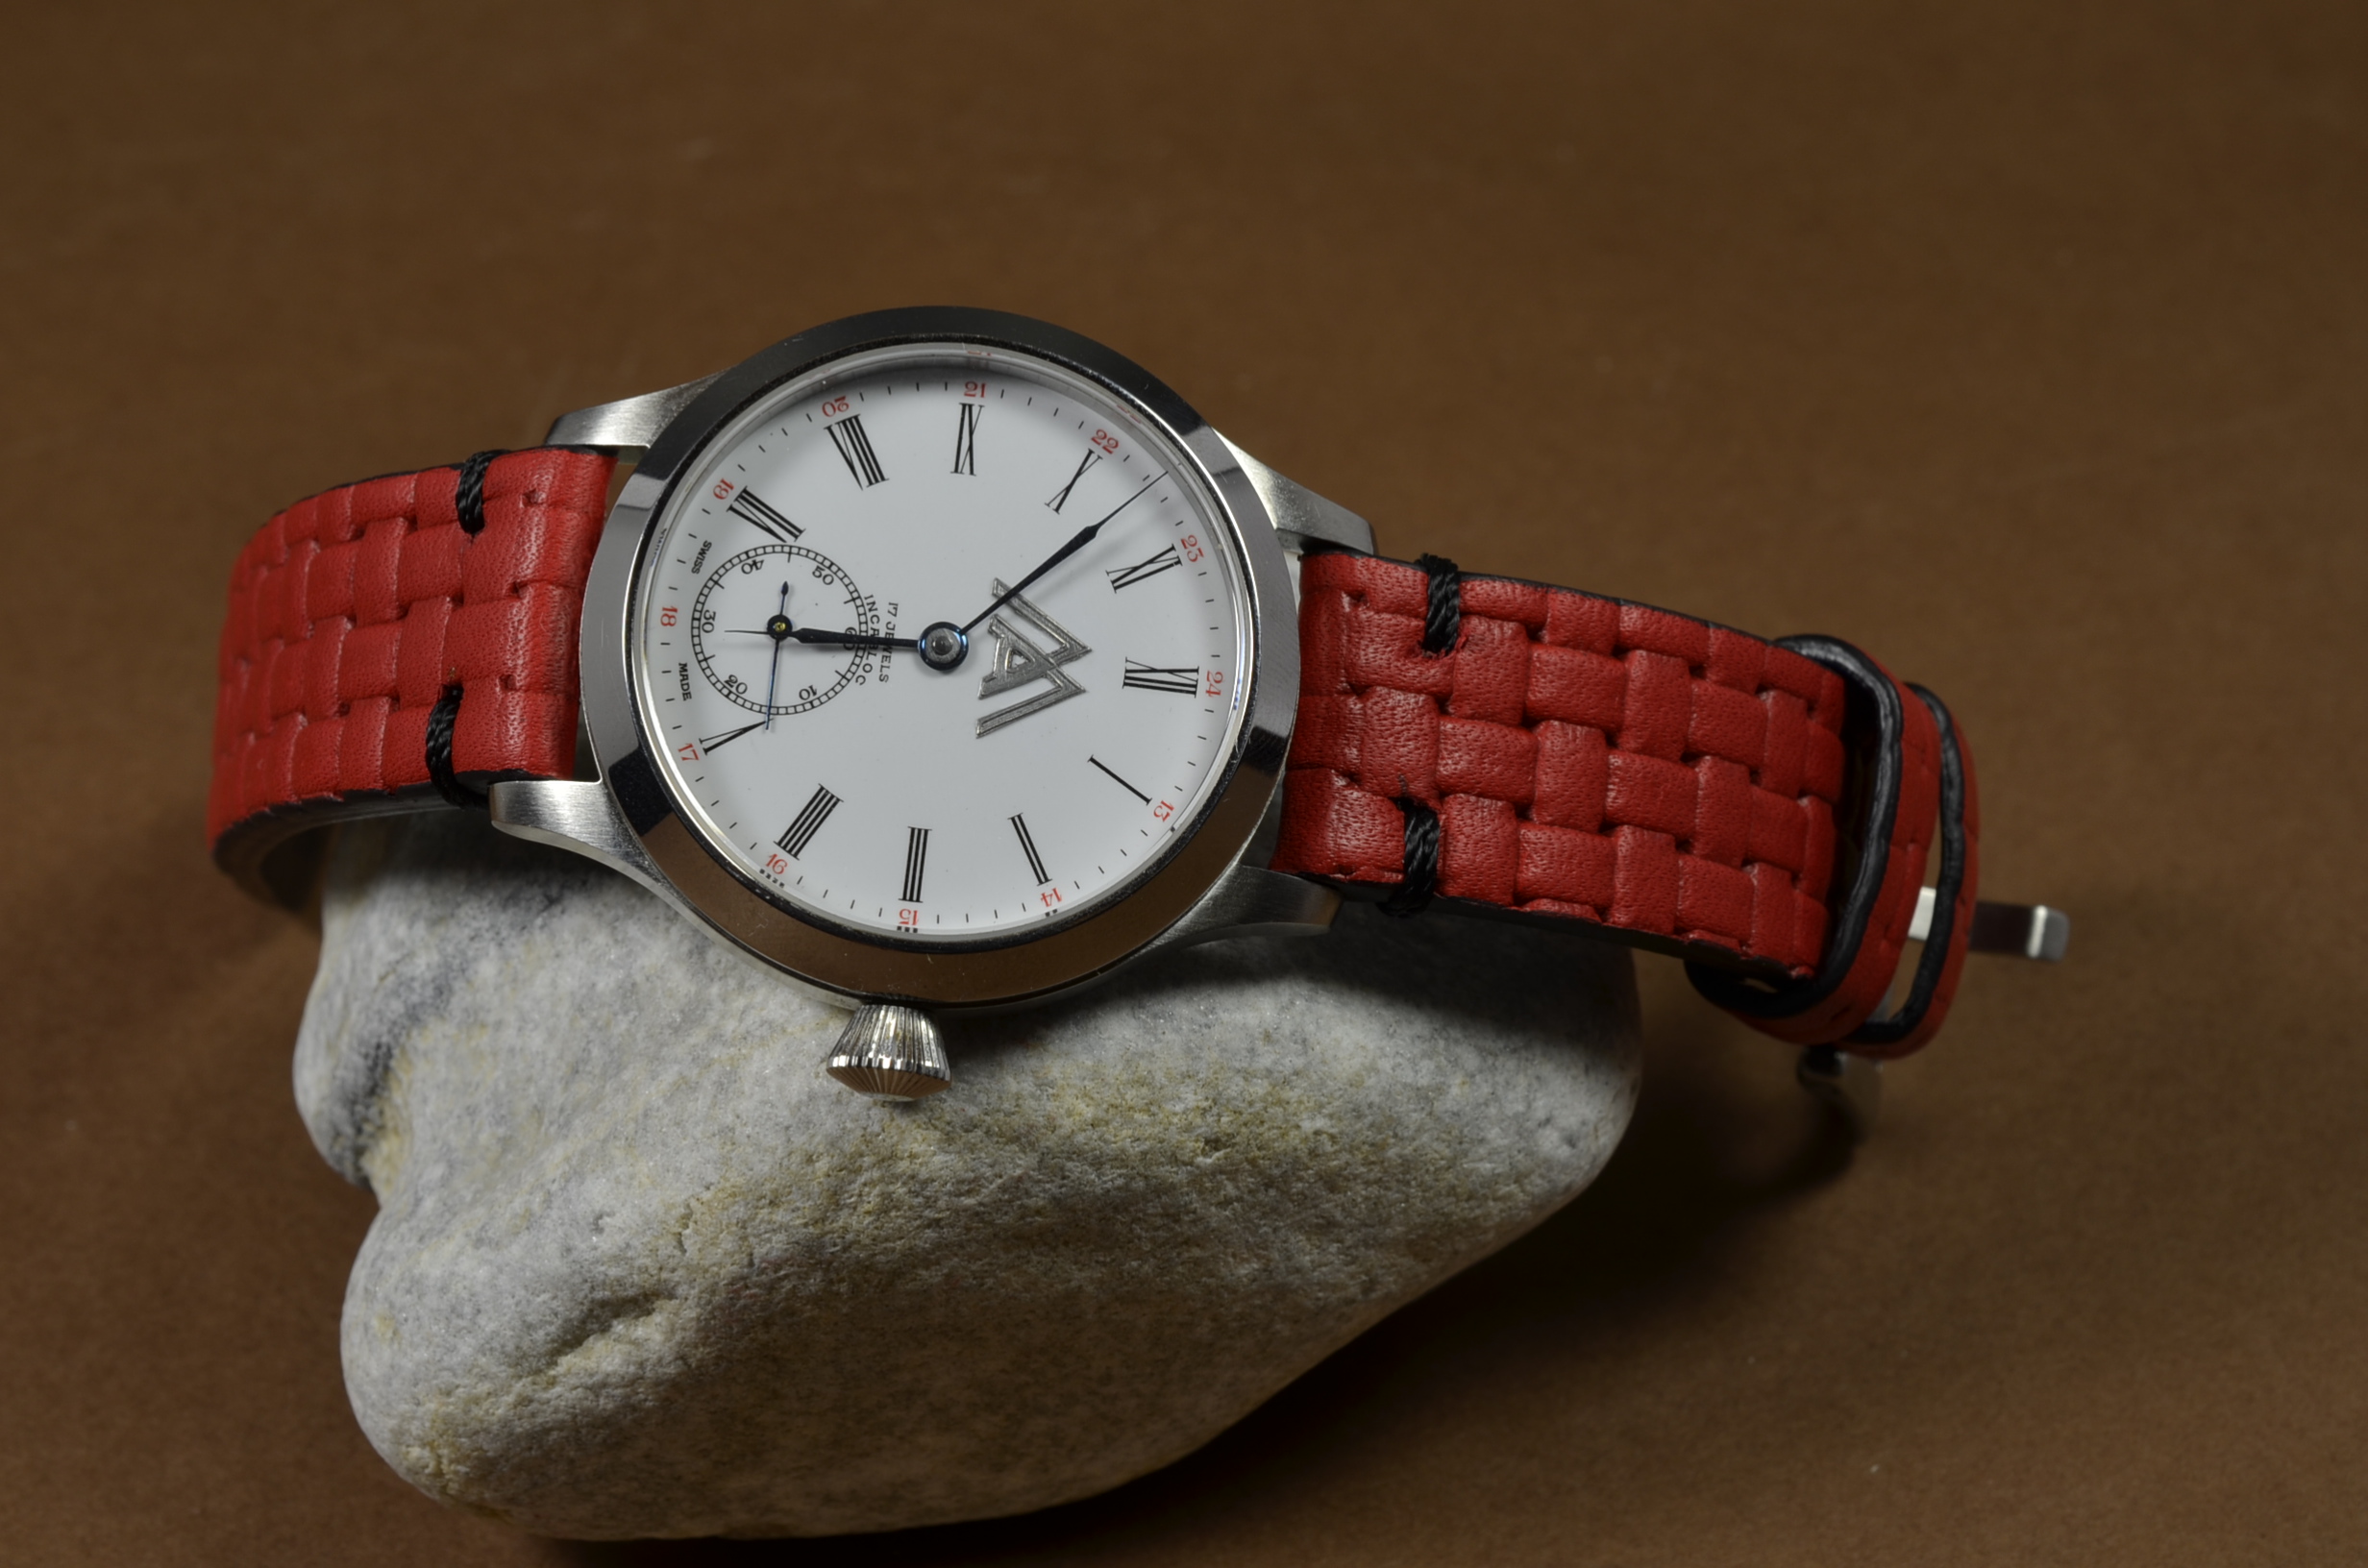 BRAIDY RED II es una de nuestras correas reloj de piel hechas a mano, con piel de becerro realzado. De color rojo, con un espesor de 4 - 4.5 mm.